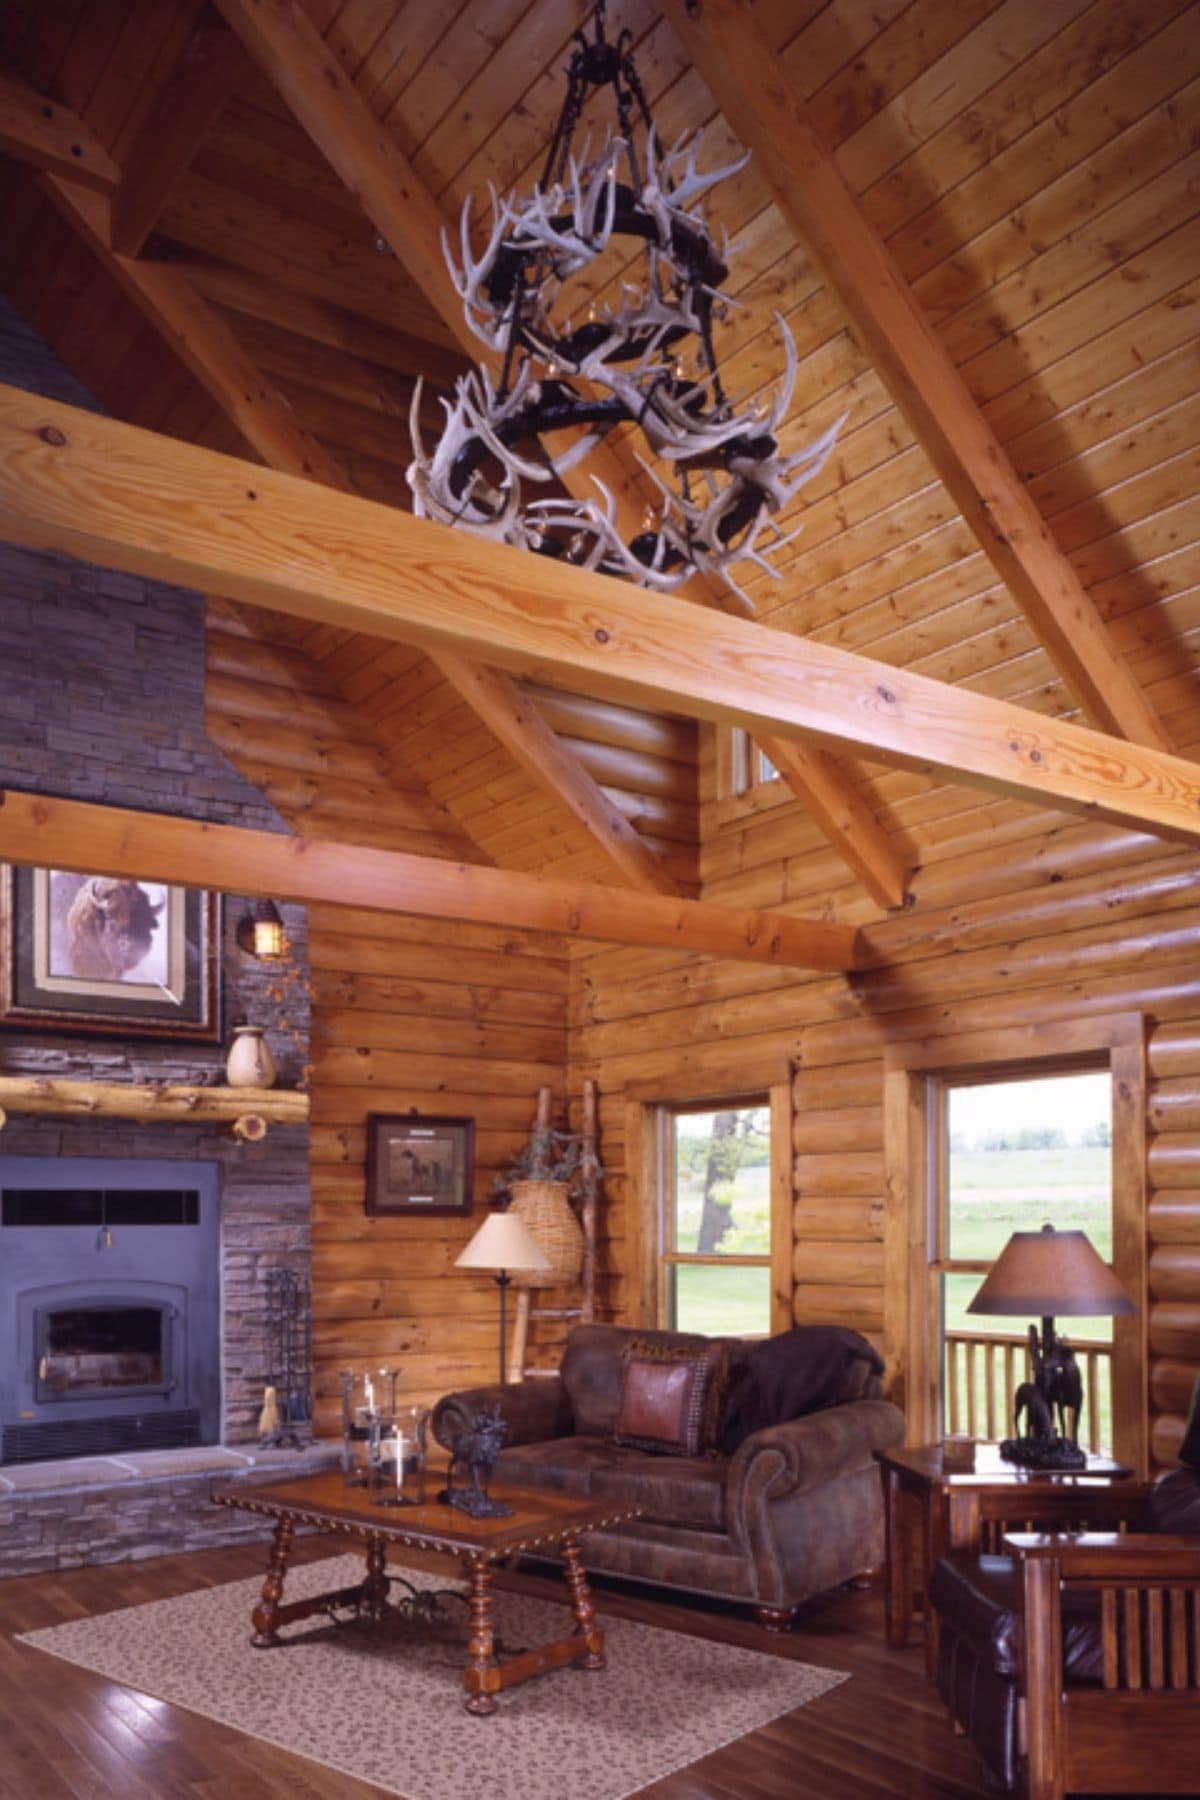 antler chandelier above living room in log cabin